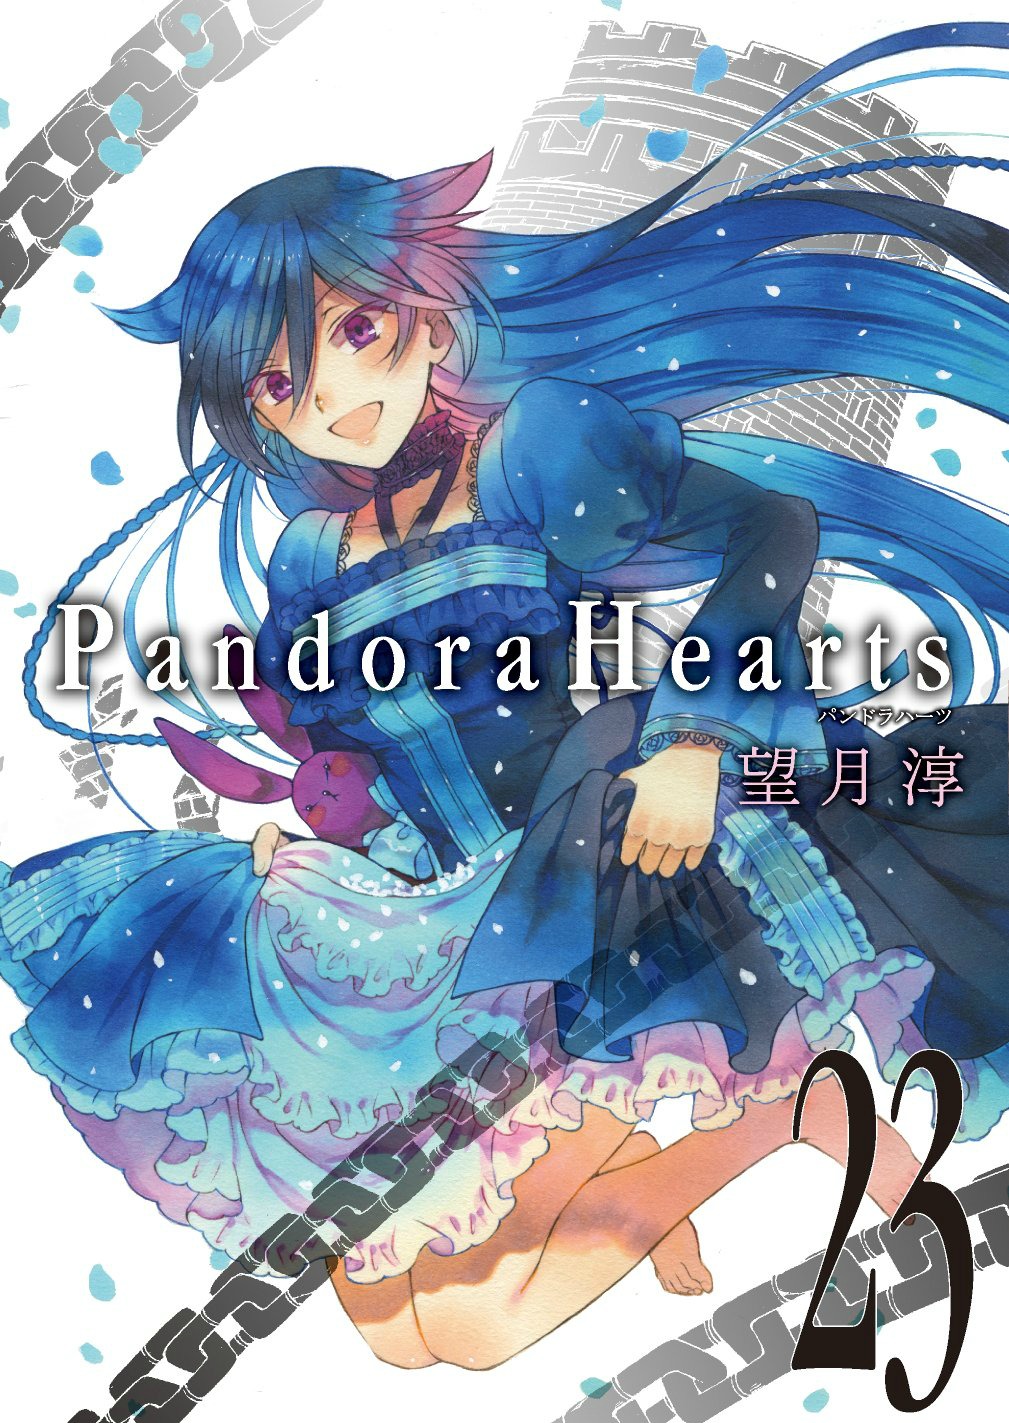 Pandora Hearts Wiki added a new photo. - Pandora Hearts Wiki